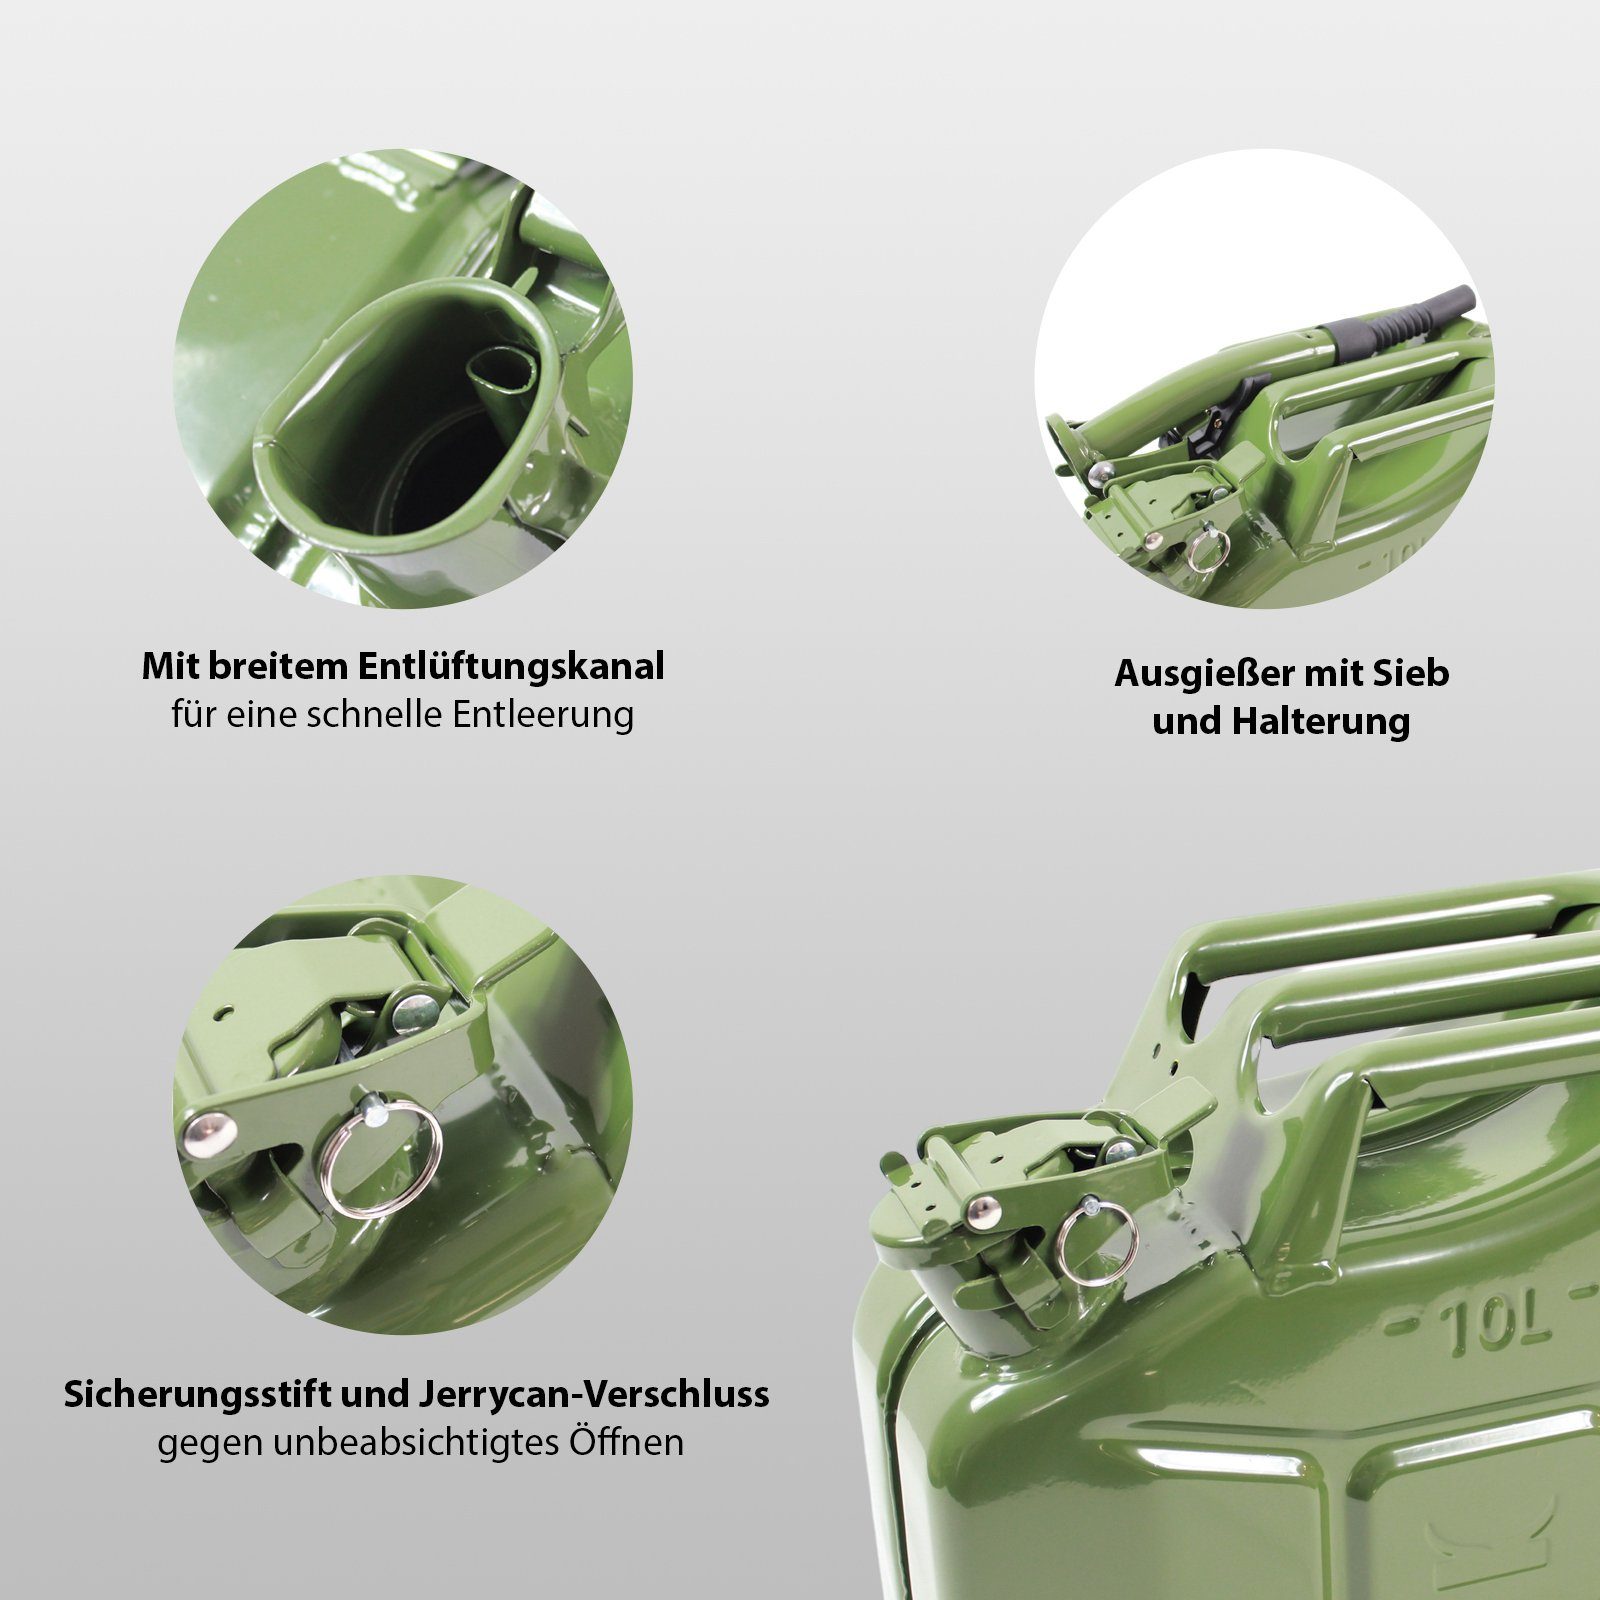 TRUTZHOLM Kanister 1x Ausgie inkl. Oliv Liter Kraftstoffkanister 10 Metall Benzinkanister